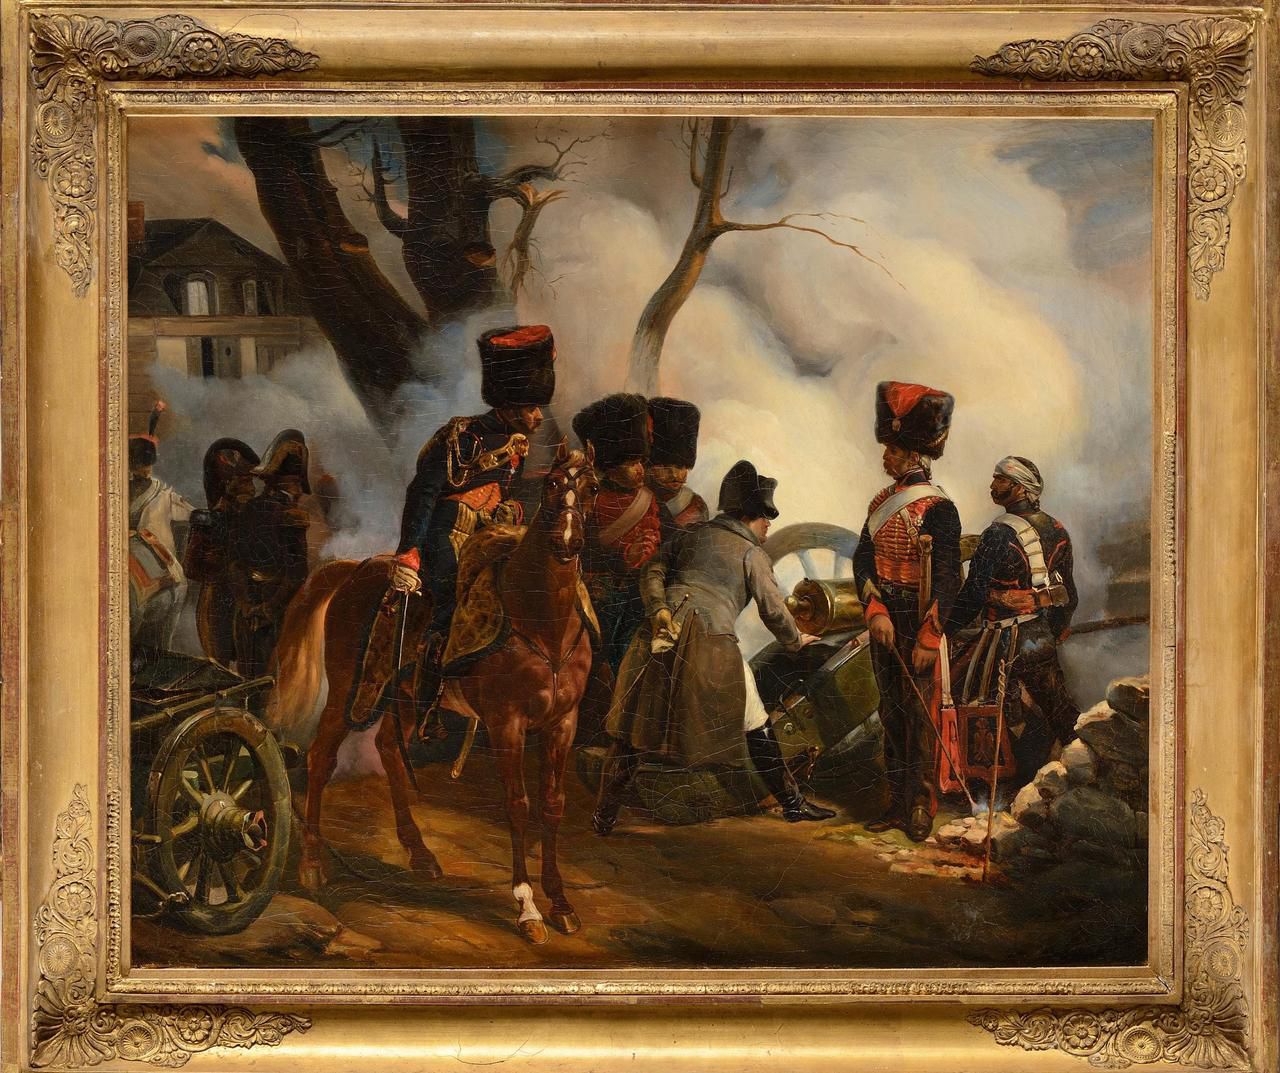 <b></b> Illustration. Ce tableau de l’Empereur à la bataille de Montereau-Fault-Yonne, estimé entre 12 000 et 15 000 euros, sera vendu aux enchères dimanche par la maison Osenat.